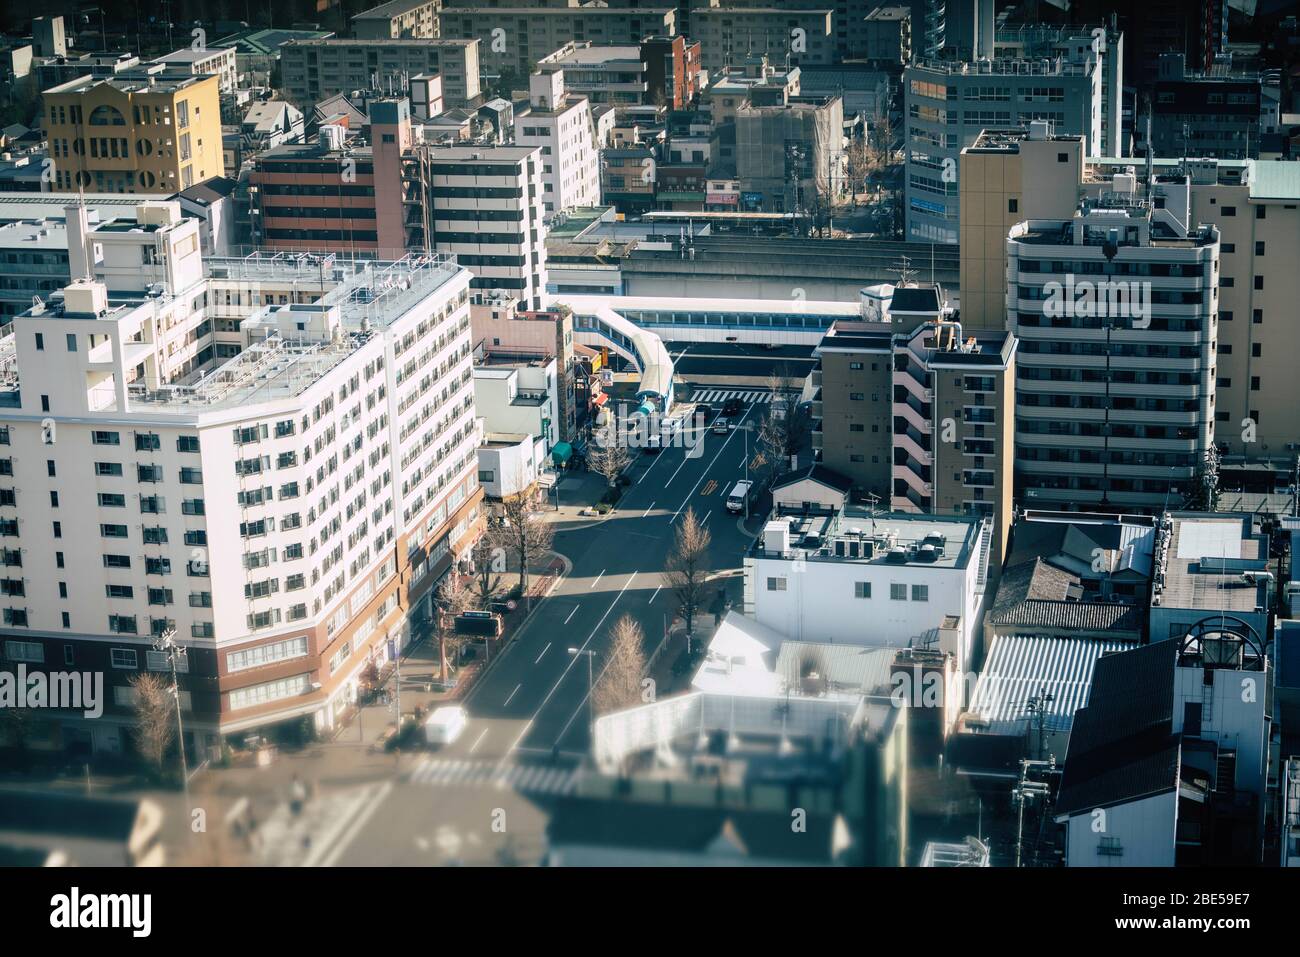 Vue aérienne sur la ville d'Osaka depuis la roue ferris Tipozan Giant, Japon Banque D'Images